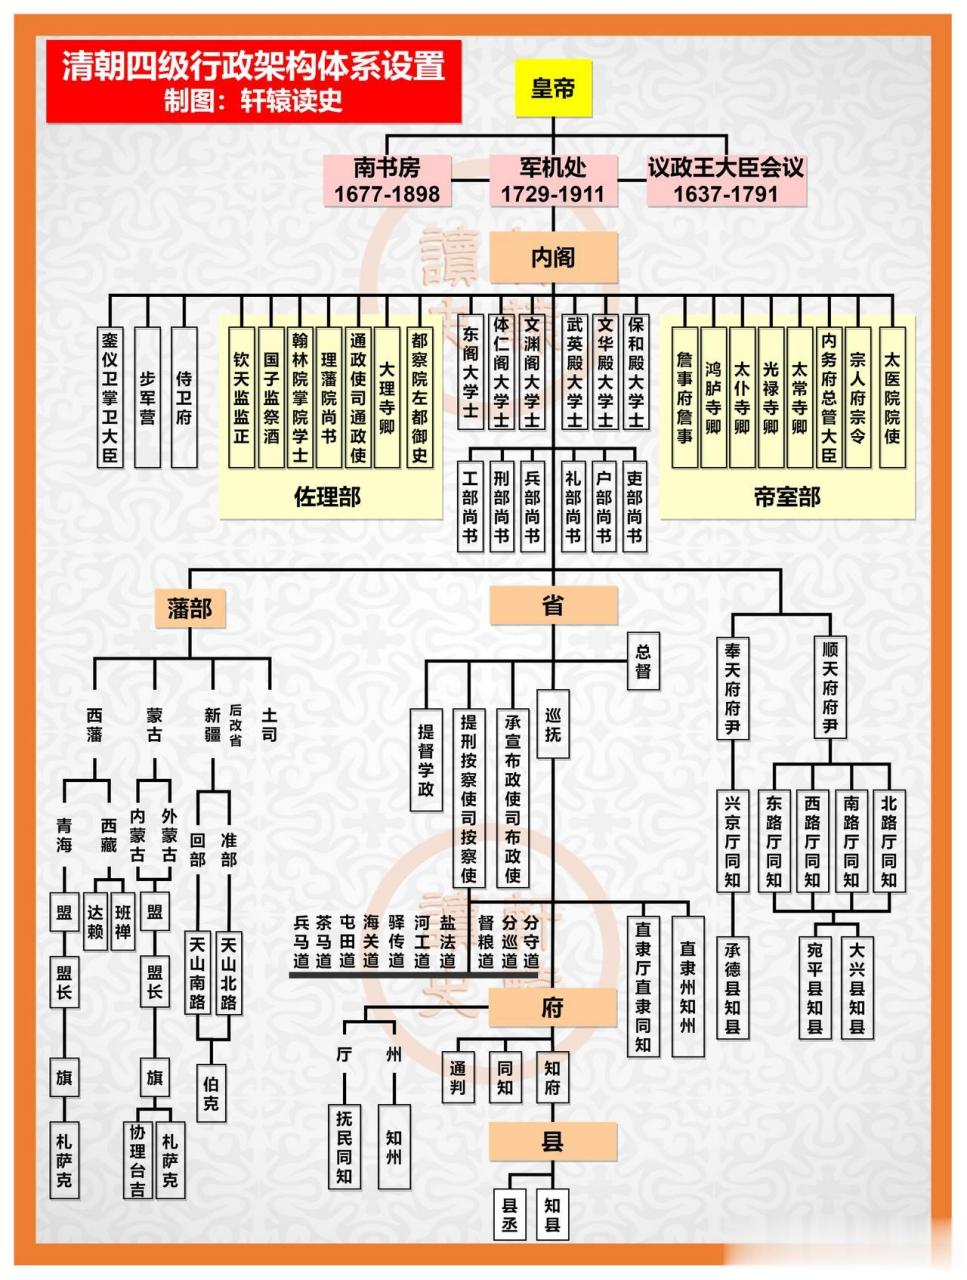 一张图看懂清朝四级行政架构体系设置